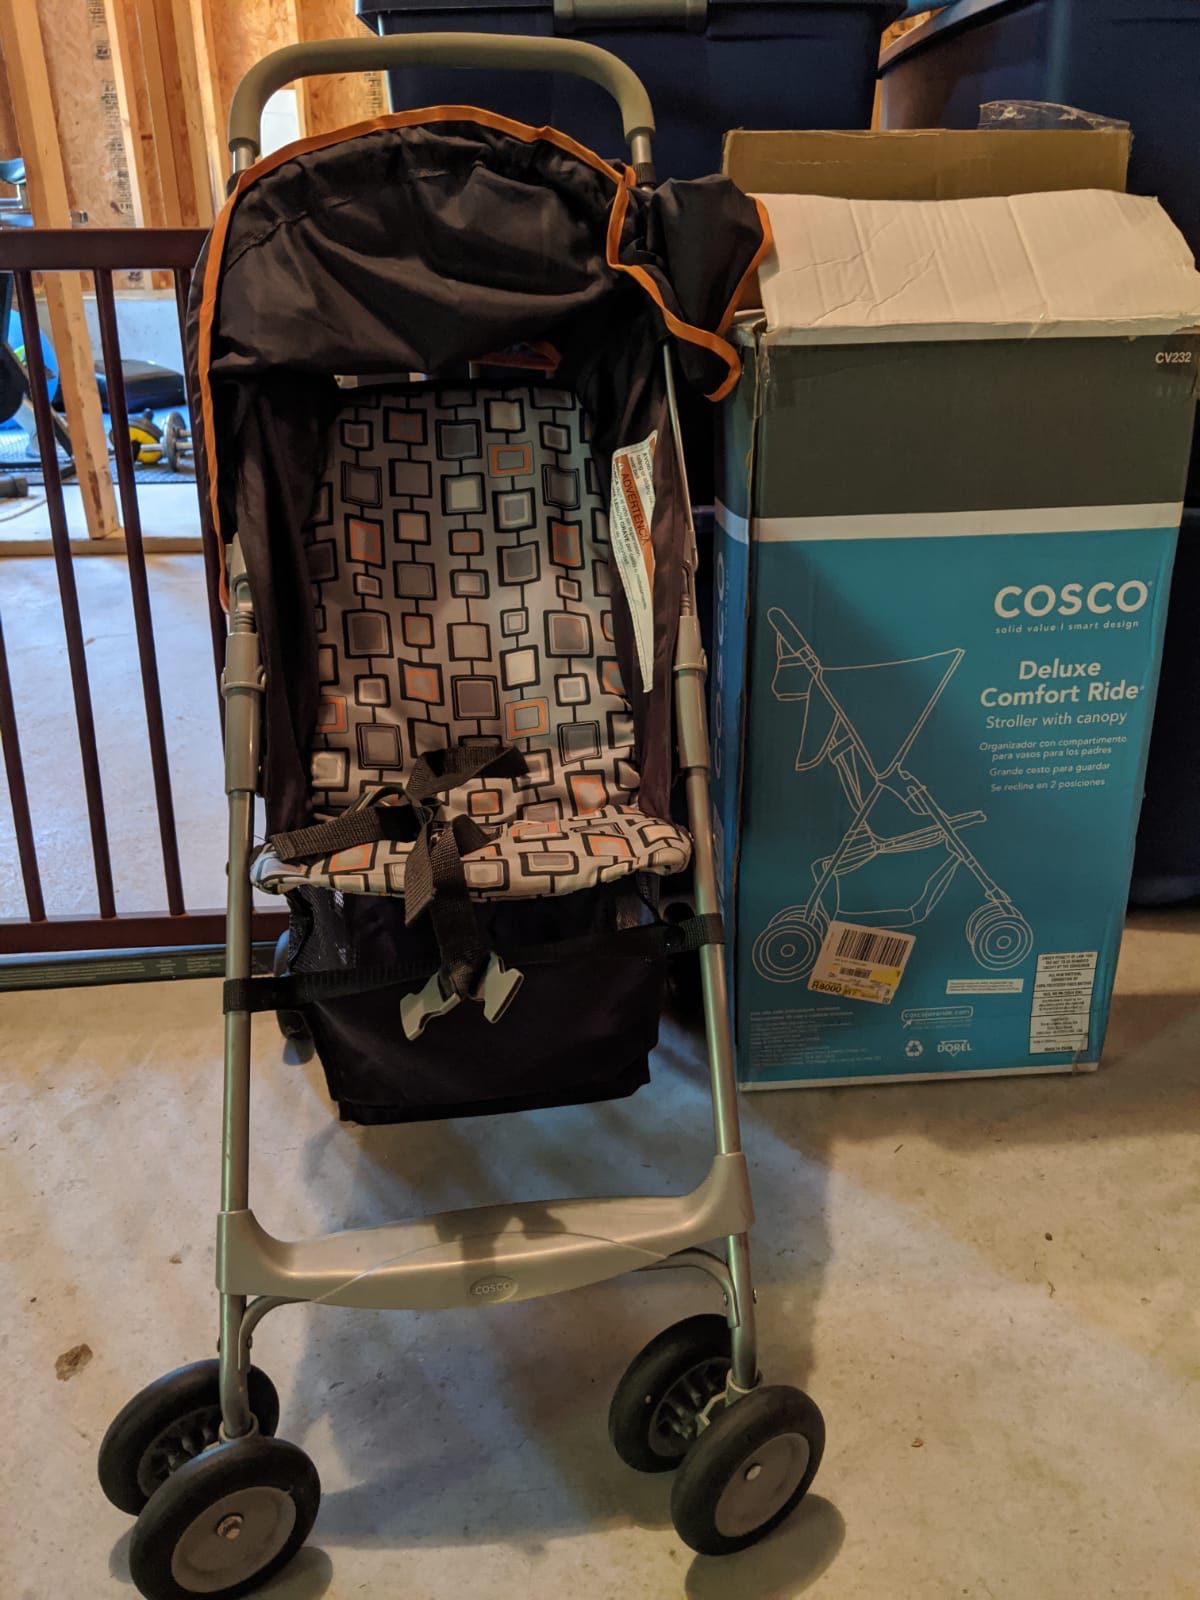 Cosco stroller